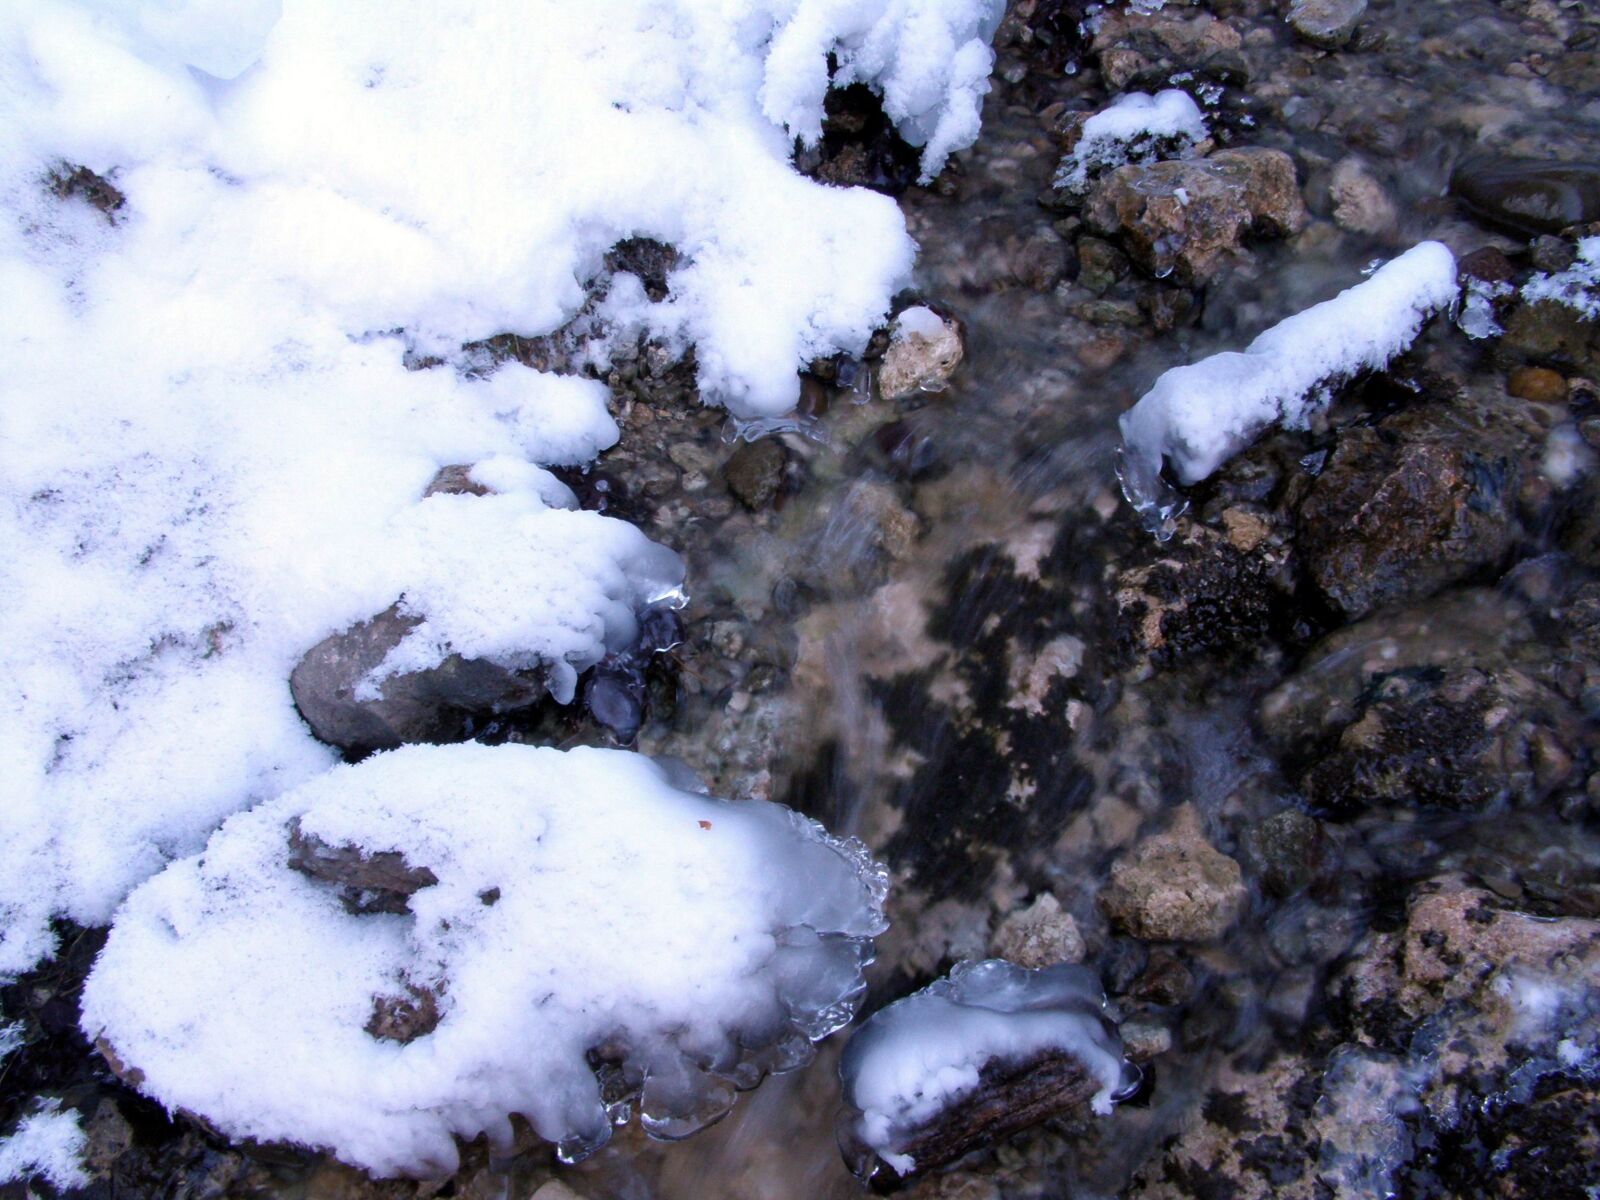 Olympus SP510UZ sample photo. Ice, water, stones photography